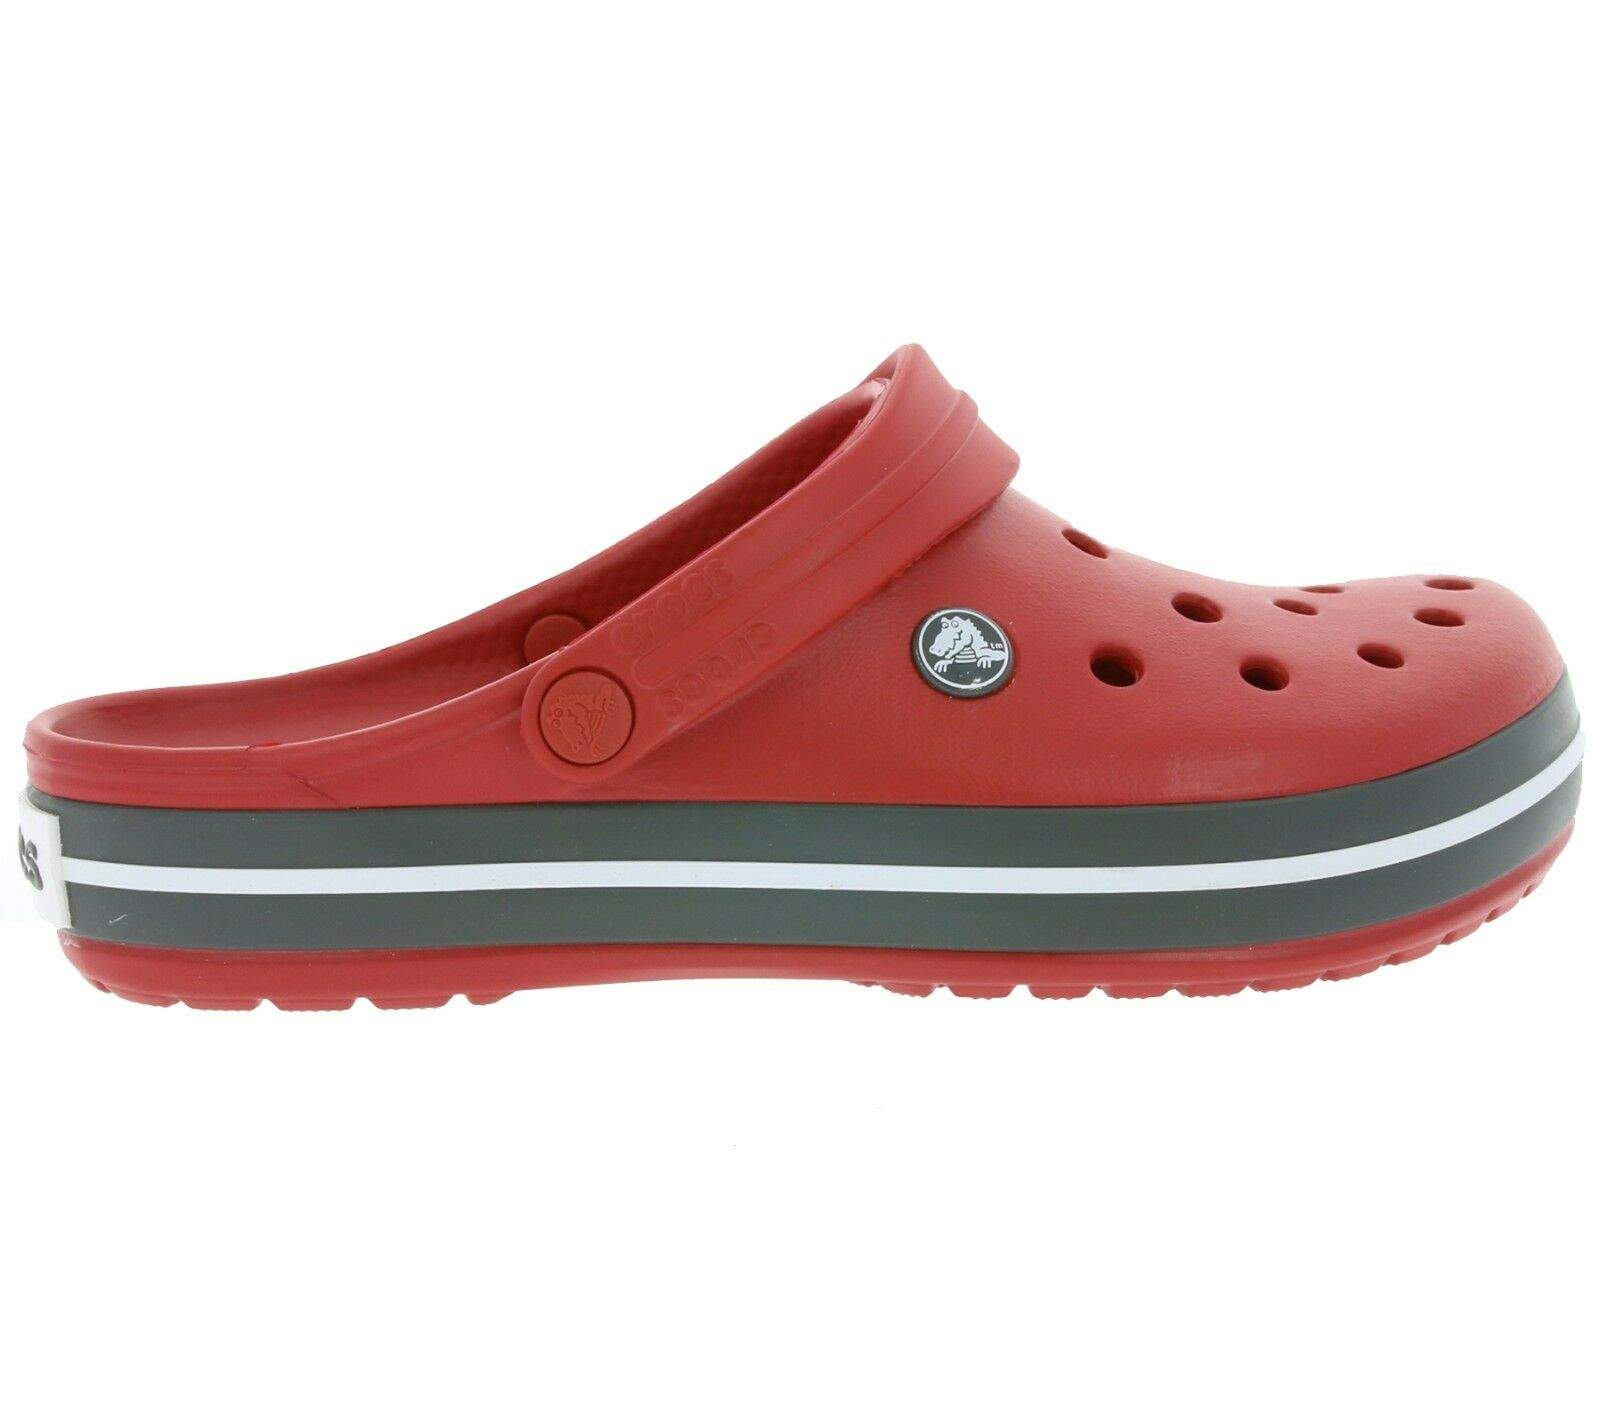 Garten Crocs Elegant Crocs Crocband Clogs Schuhe Hausschuhe Pantoletten Badeschuhe Sandale Neu